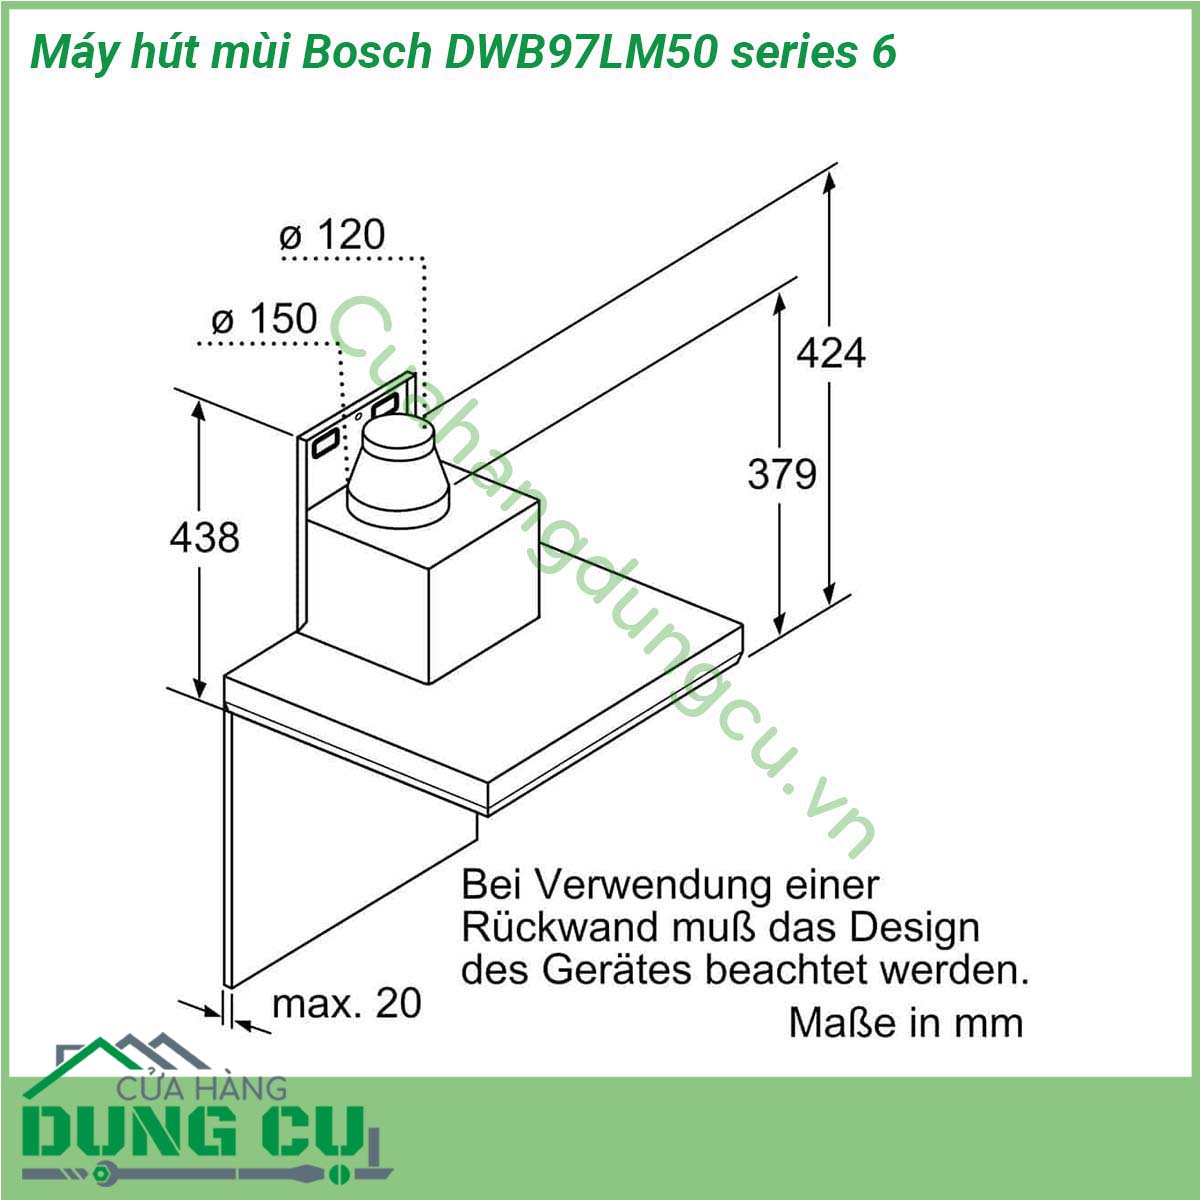 Máy hút mùi Bosch DWB97LM50 series 6 thuộc dòng sản phẩm máy hút mùi Bosch series 6 với thiết kế sang trọng hiện đại phù hợp với mọi không gian bếp Máy được trang bị nhiều tính năng ưu việt cùng với công suất hút lớn trong khi độ ồn siêu êm đảm bảo hút sạch hiệu quả các loại mùi đem lại không gian thoáng đãng cho căn bếp mà không ảnh hưởng đến sinh hoạt gia đình